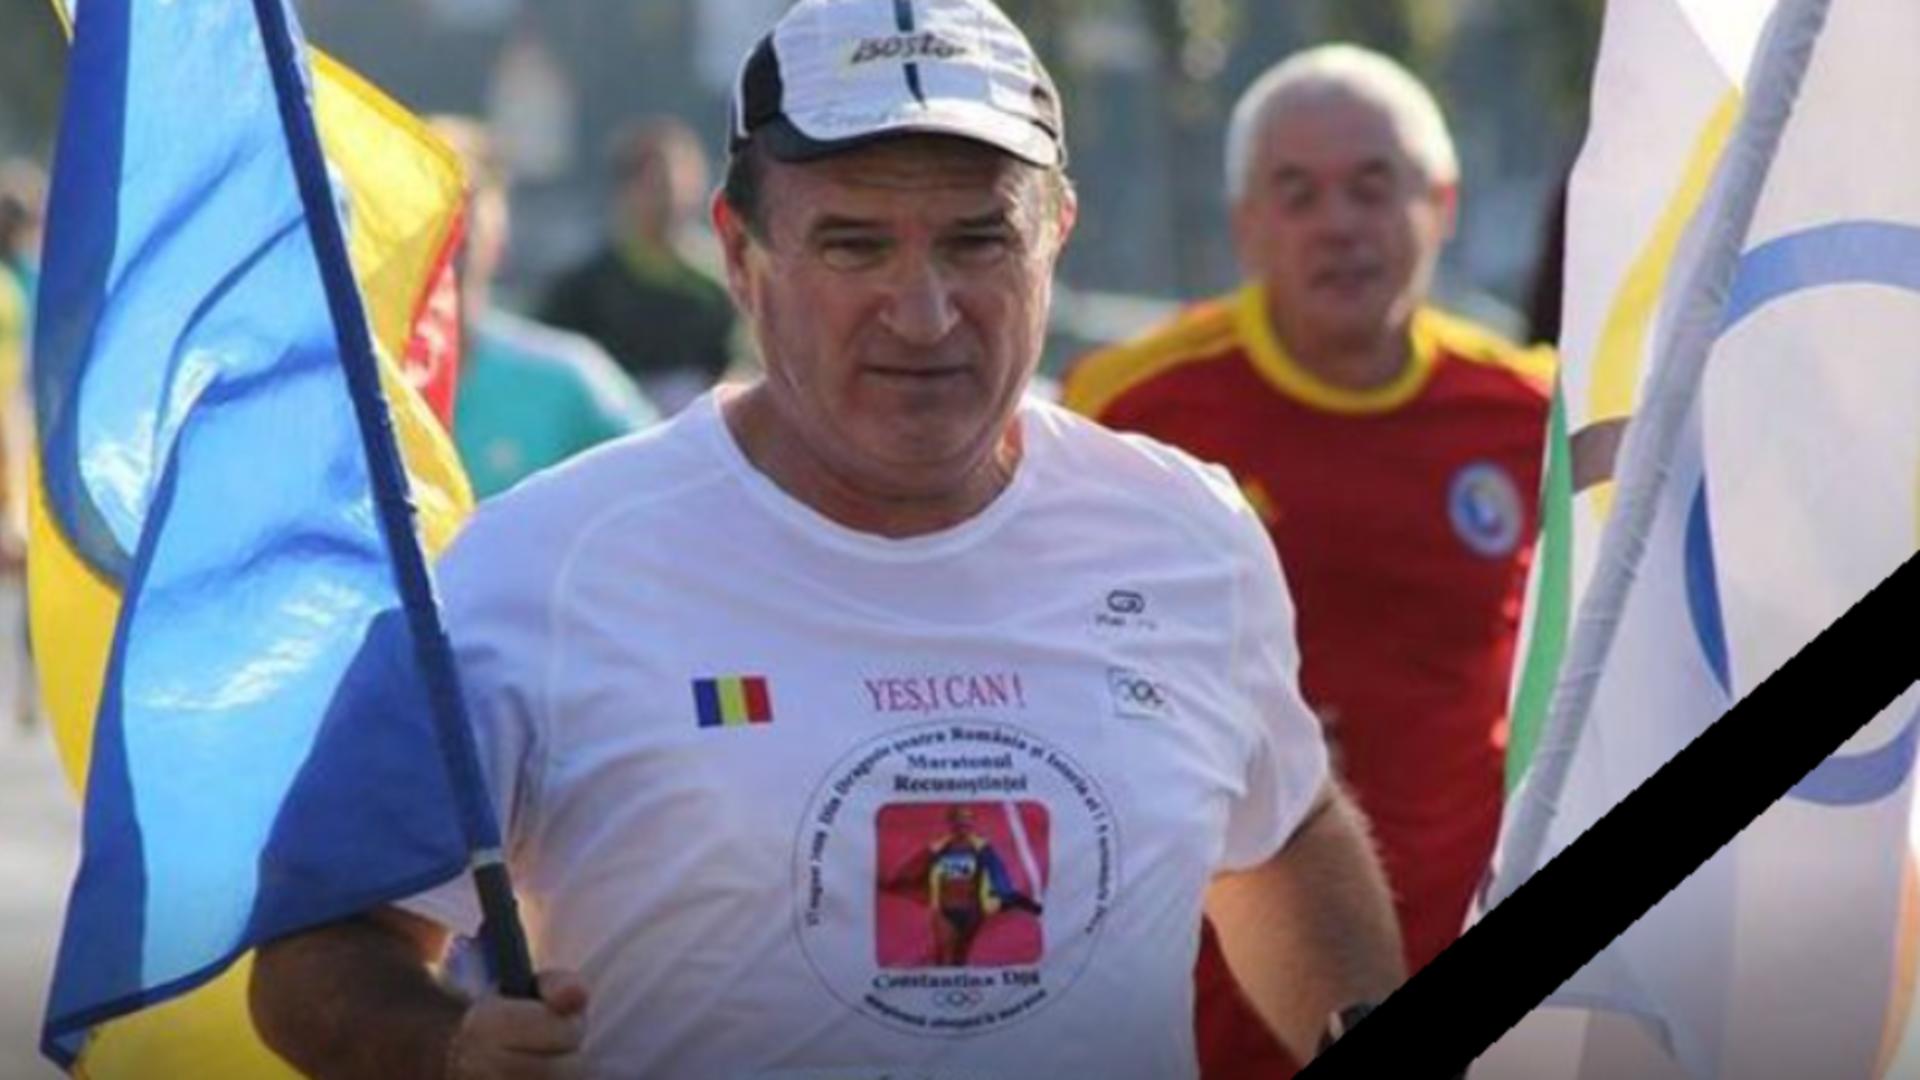 Maratonistul Ilie Roşu a decedat după ce a făcut stop cardiac în timpul Maratonului Unirii